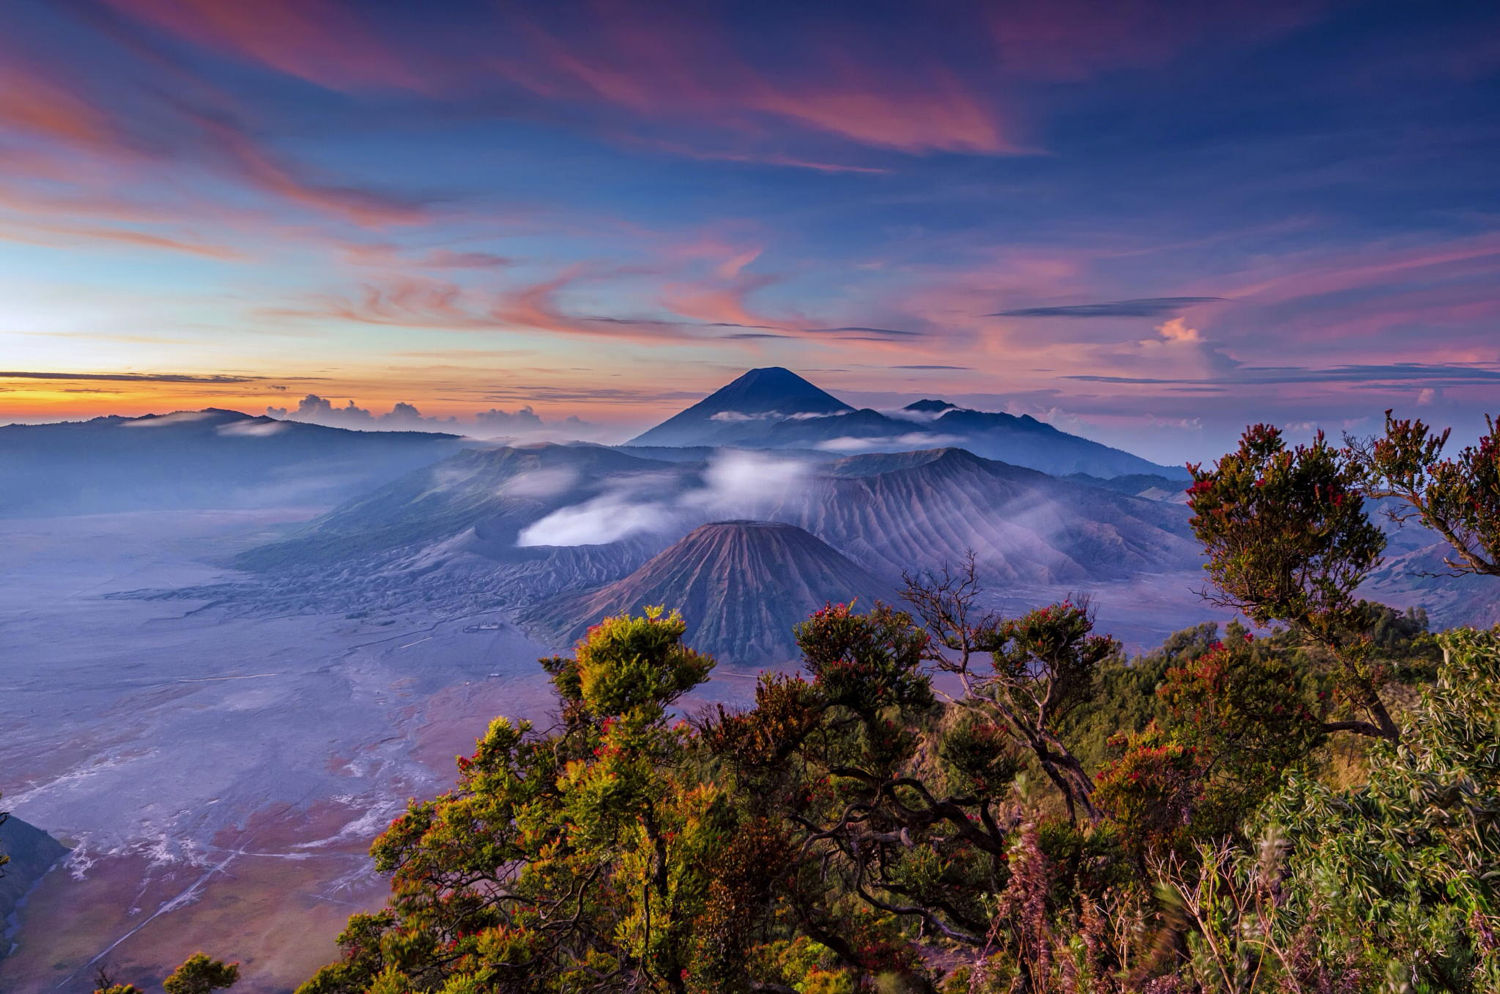 印度尼西亚的布罗莫火山,无论是清晨的日出还是夜晚的银河